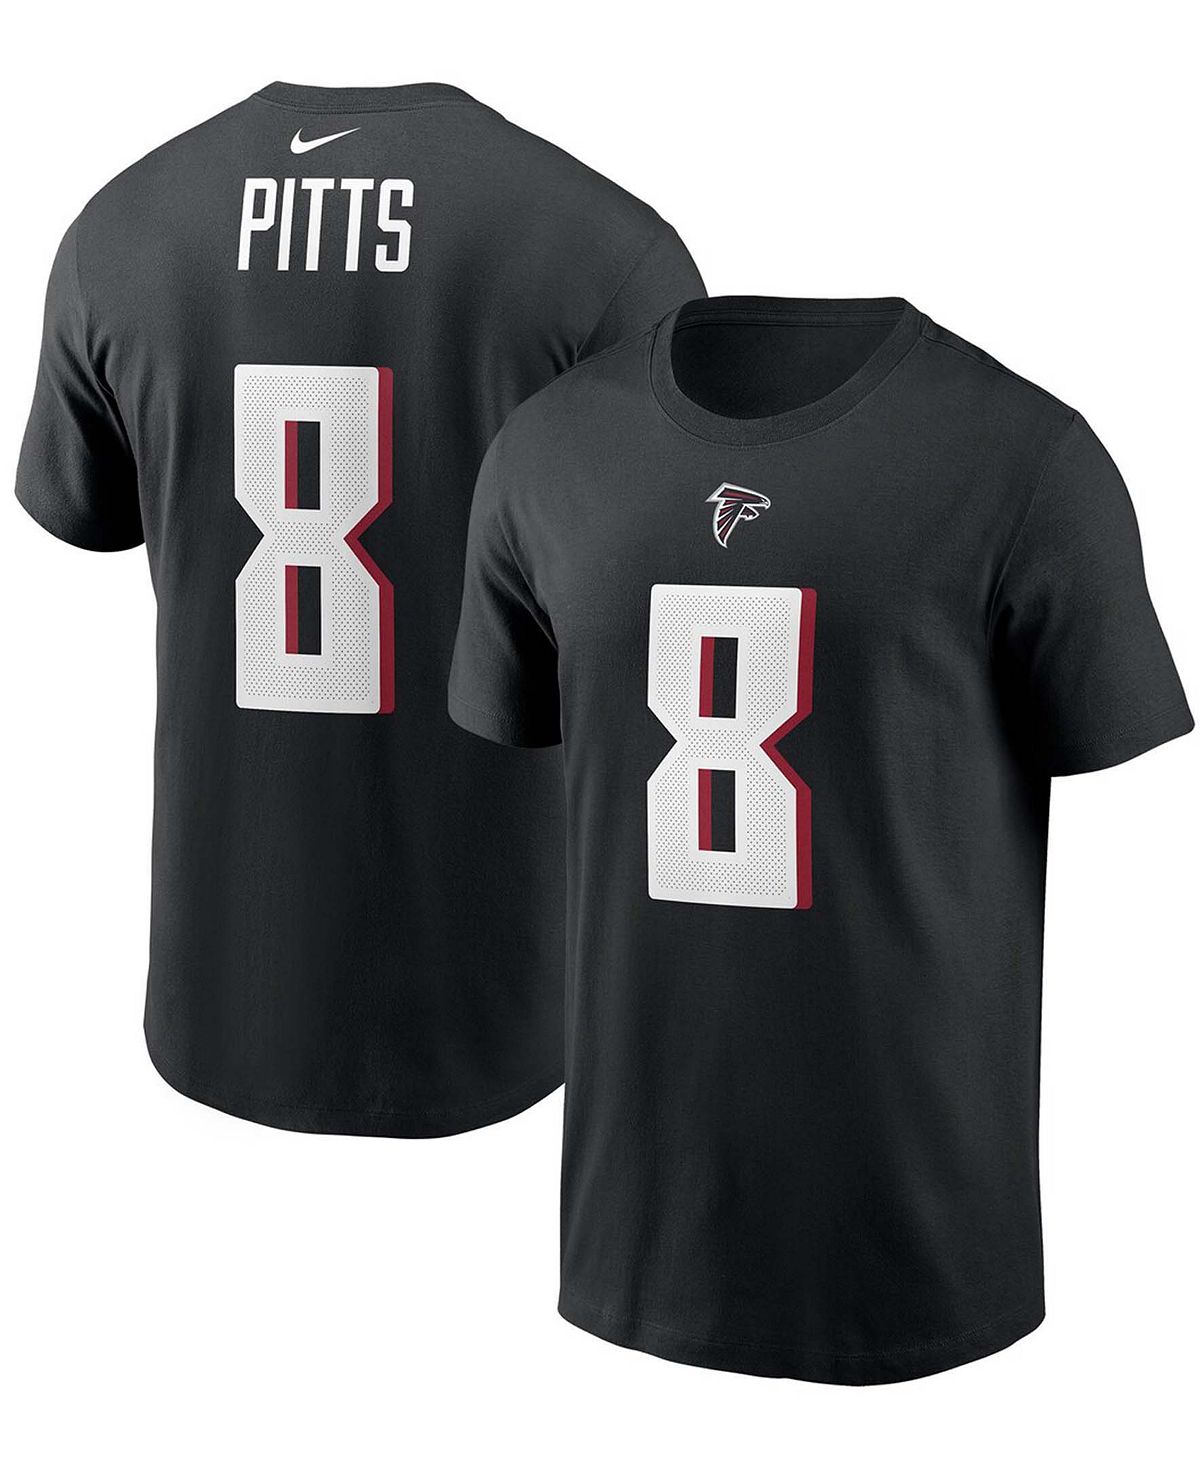 цена Мужская футболка Kyle Pitts Black Atlanta Falcons с именем и номером игрока первого раунда драфта НФЛ 2021 года Nike